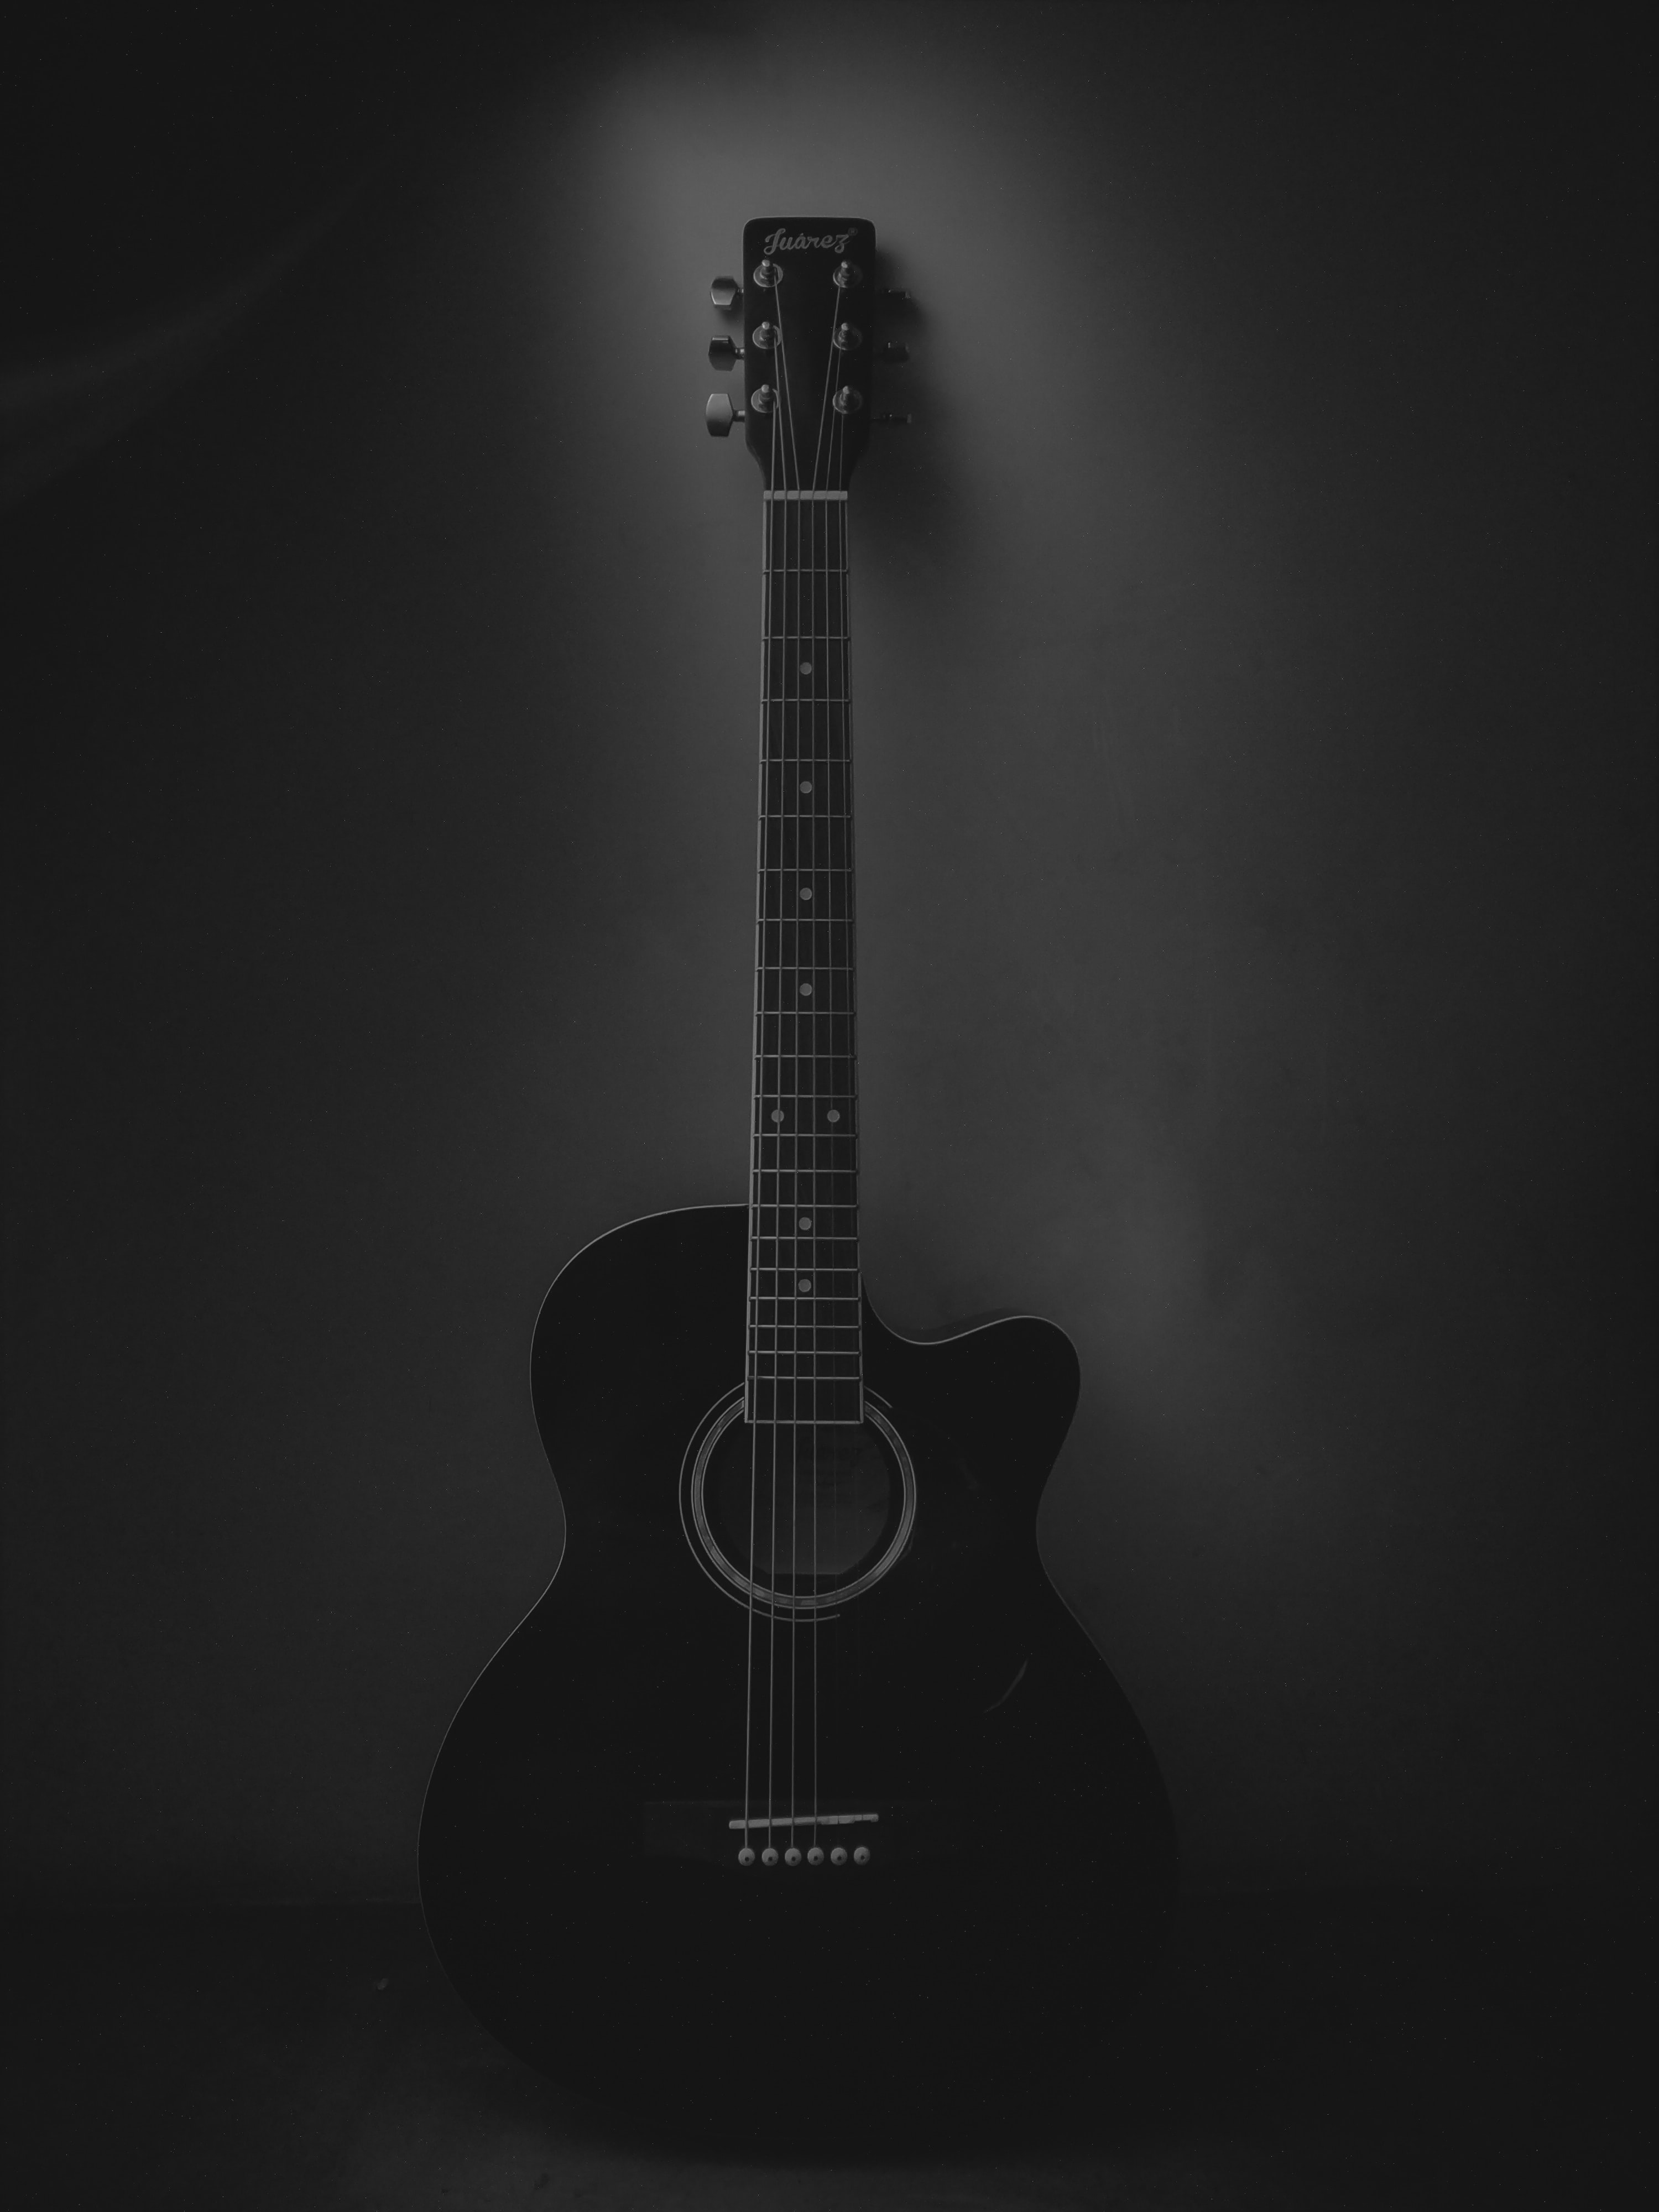 dark, black, guitar, music, musical instrument, acoustic guitar